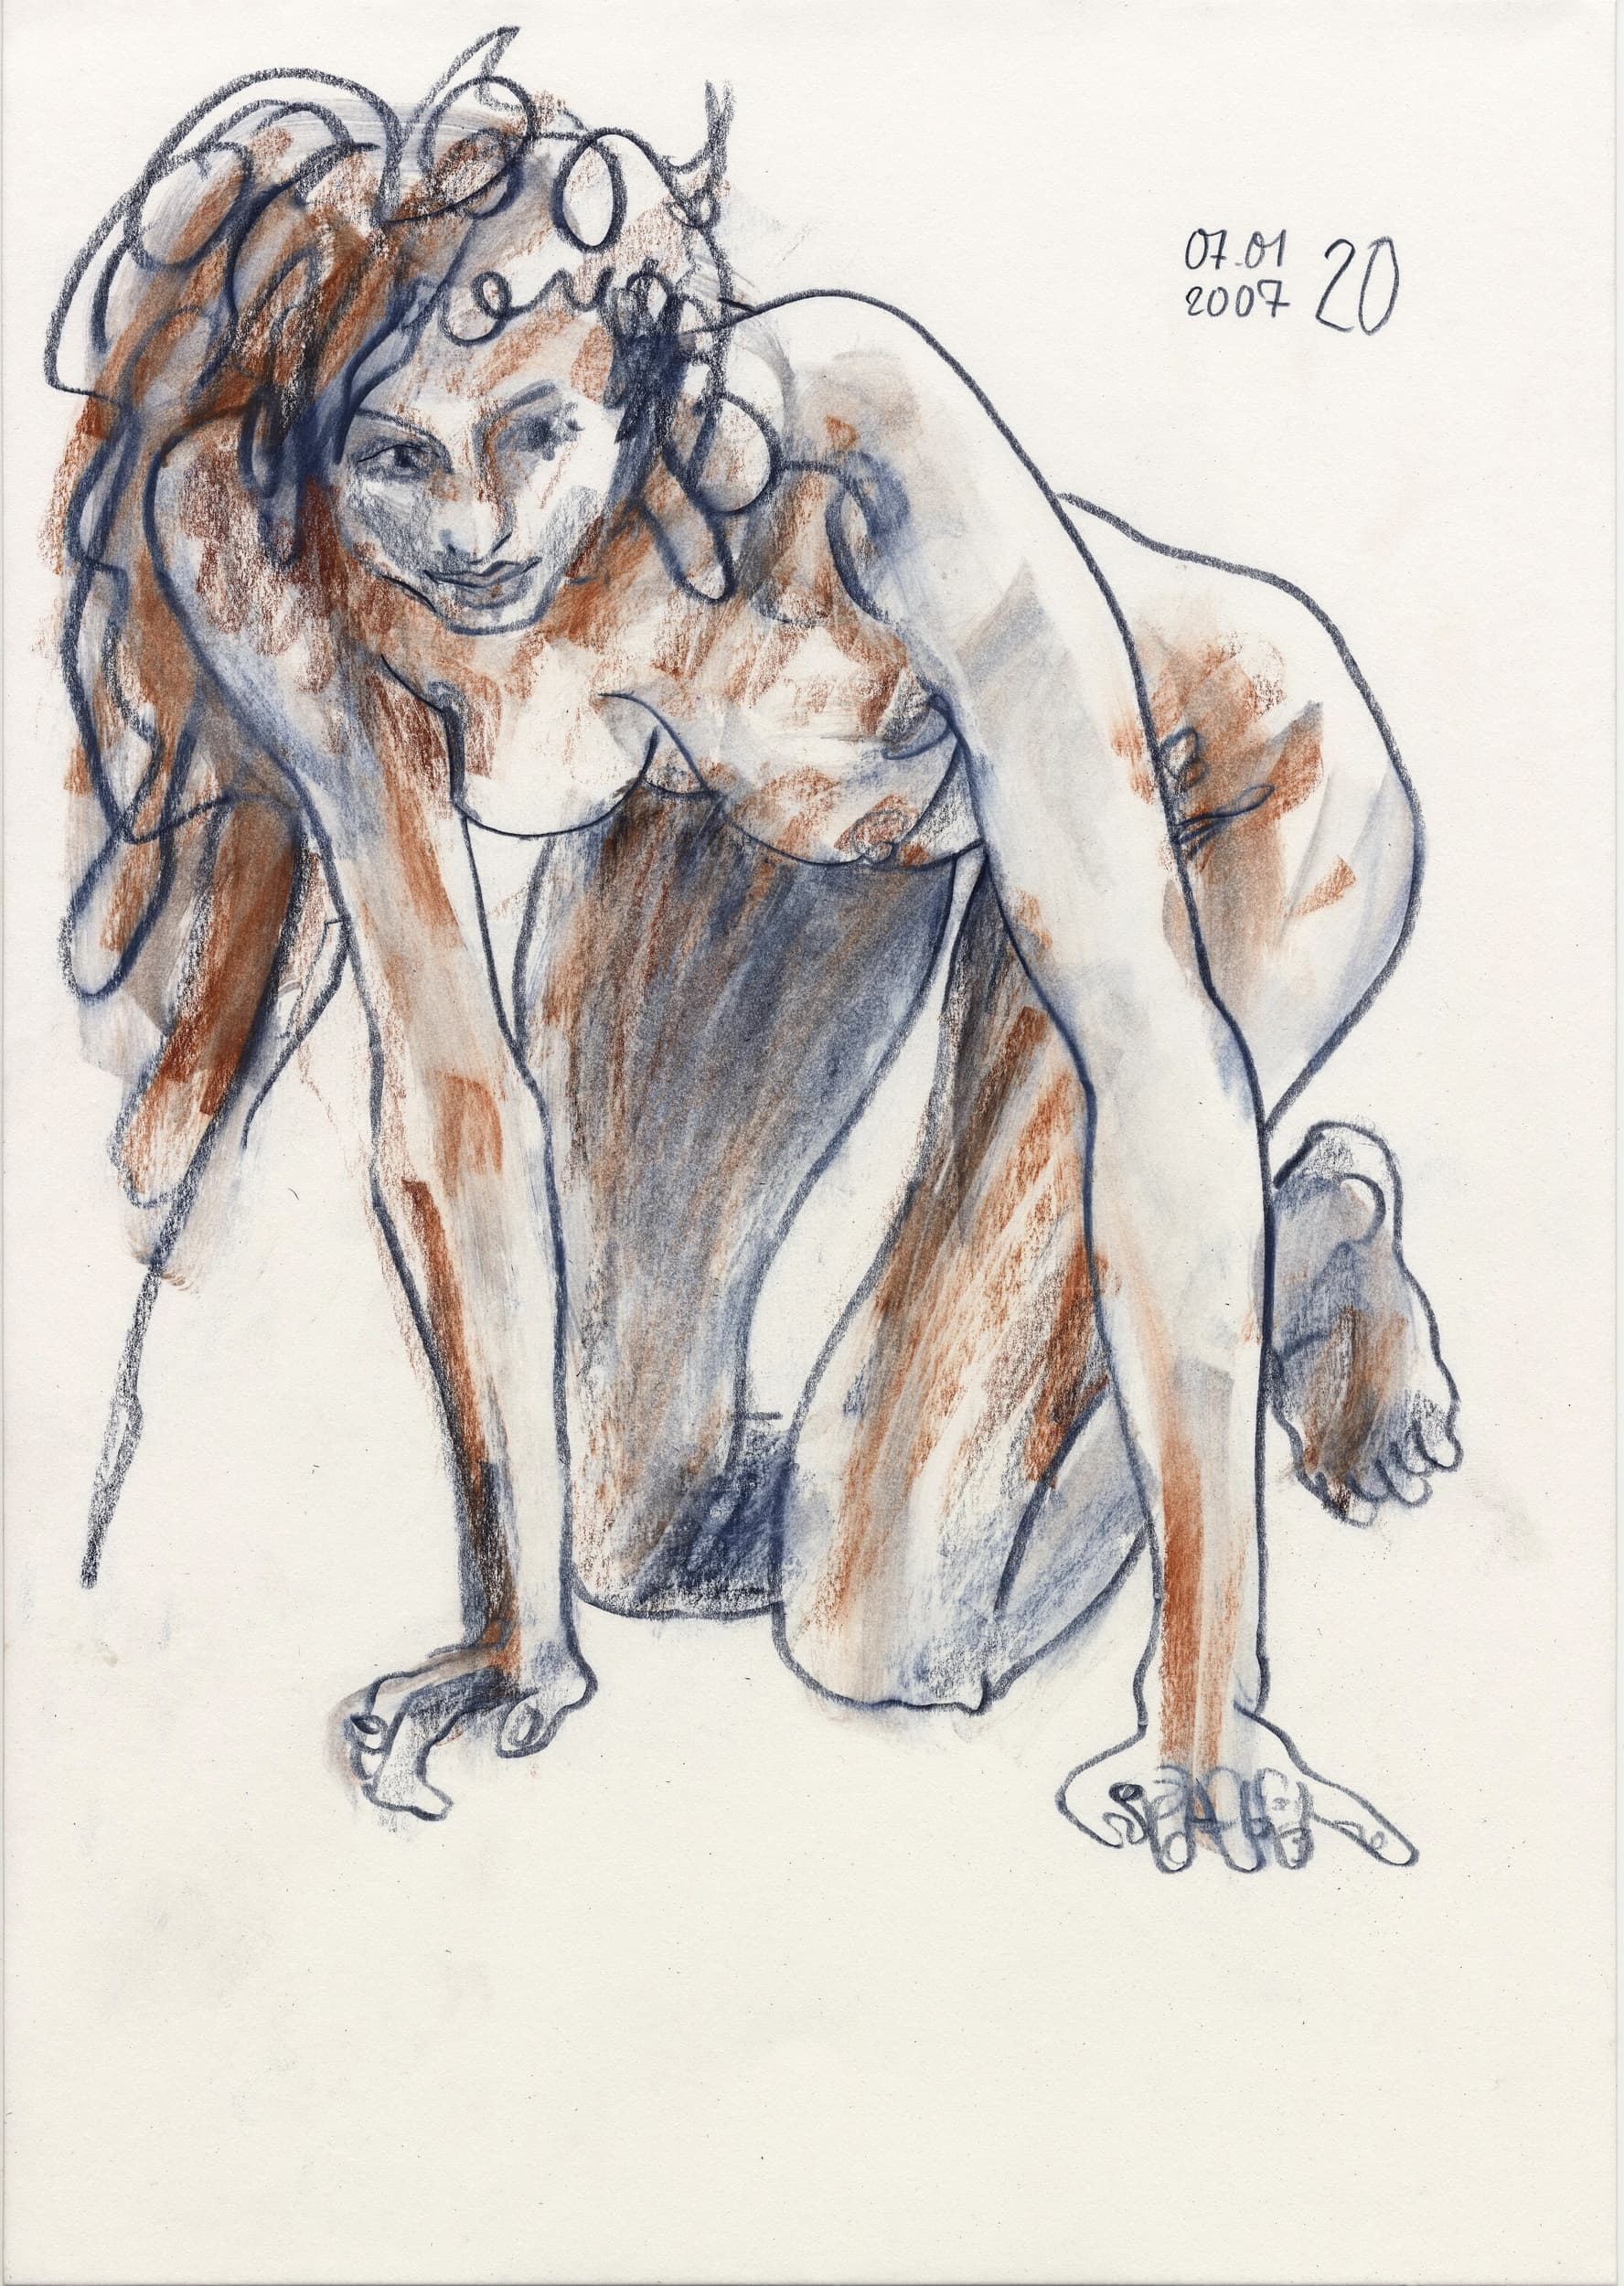 Gunter Langer, kniender weiblicher Akt, 2007, Zeichnung Bleistift (Bleistiftzeichnung), Karton, 42 x 30 cm